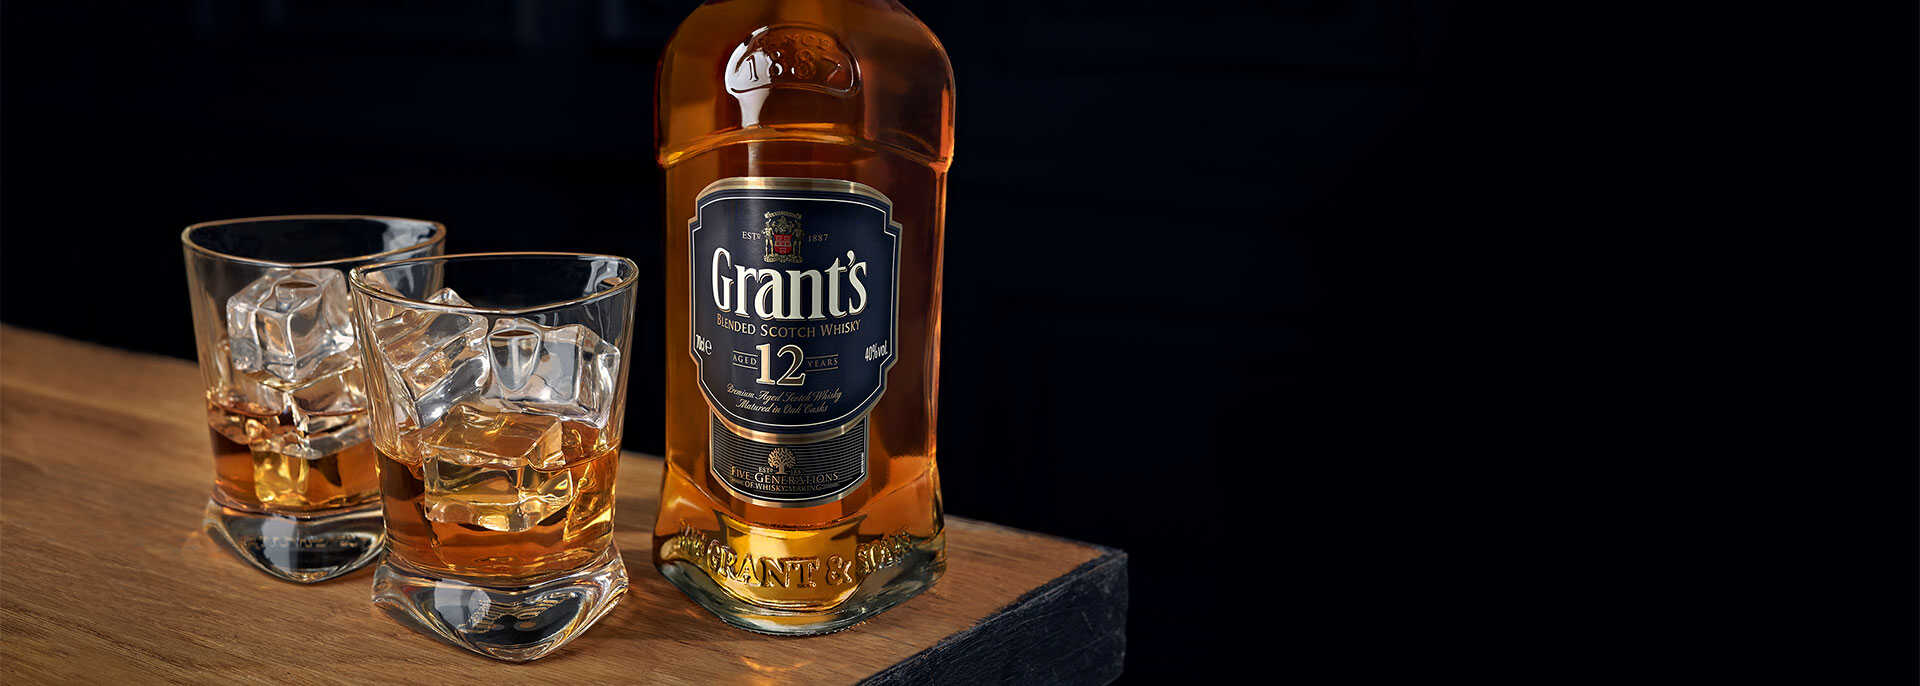 Warianty whisky Grant's w nowej odsłonie